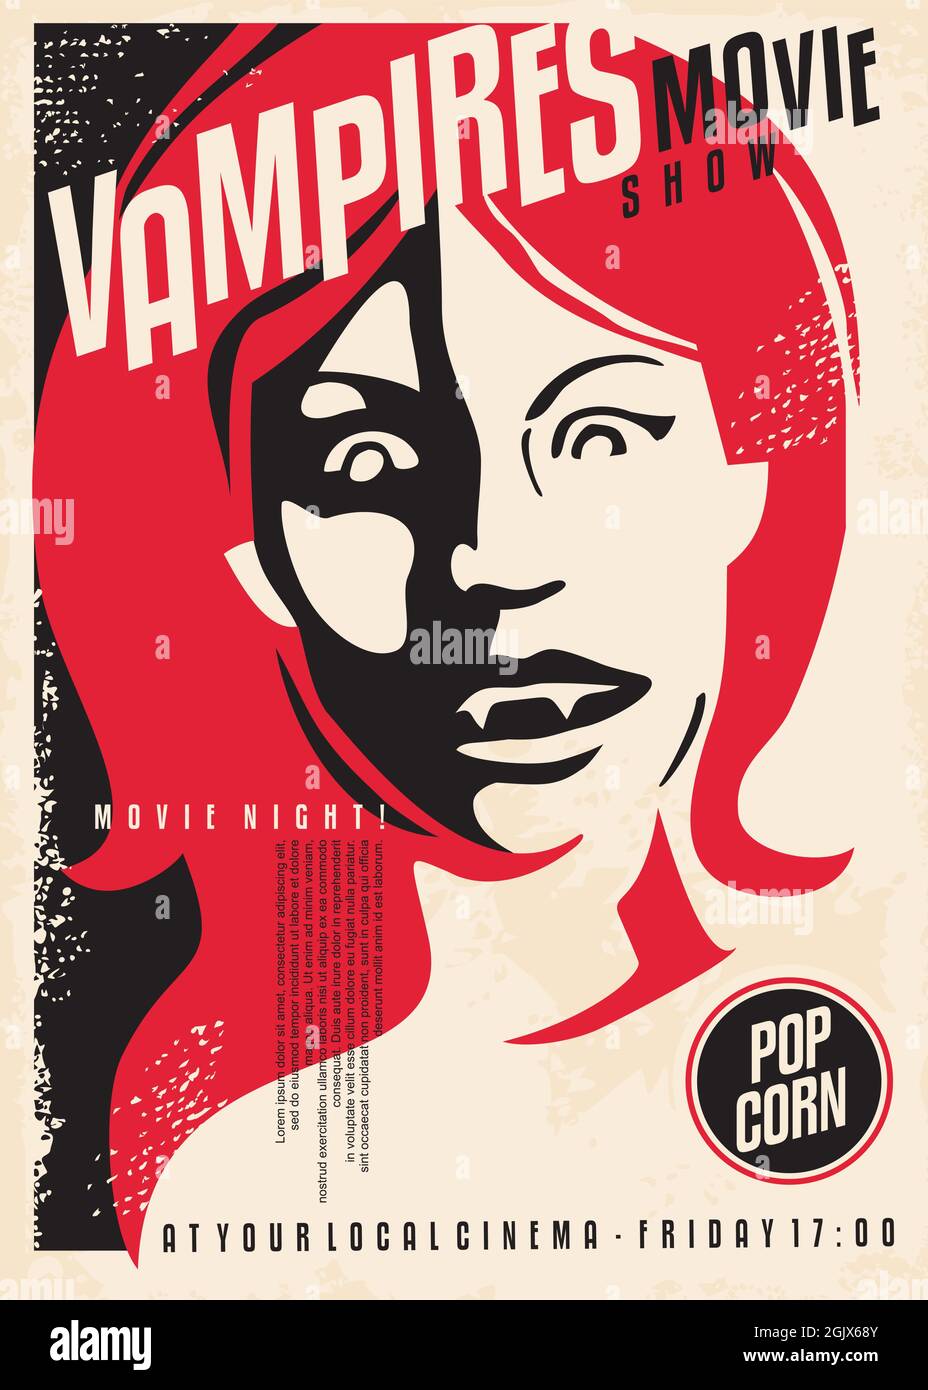 Vampire Horrorfilm zeigen Retro Kino Poster Design auf alten Papiertextur. Vintage Filmposter mit rotem Haar weibliches Vampir-Portrait Stock Vektor